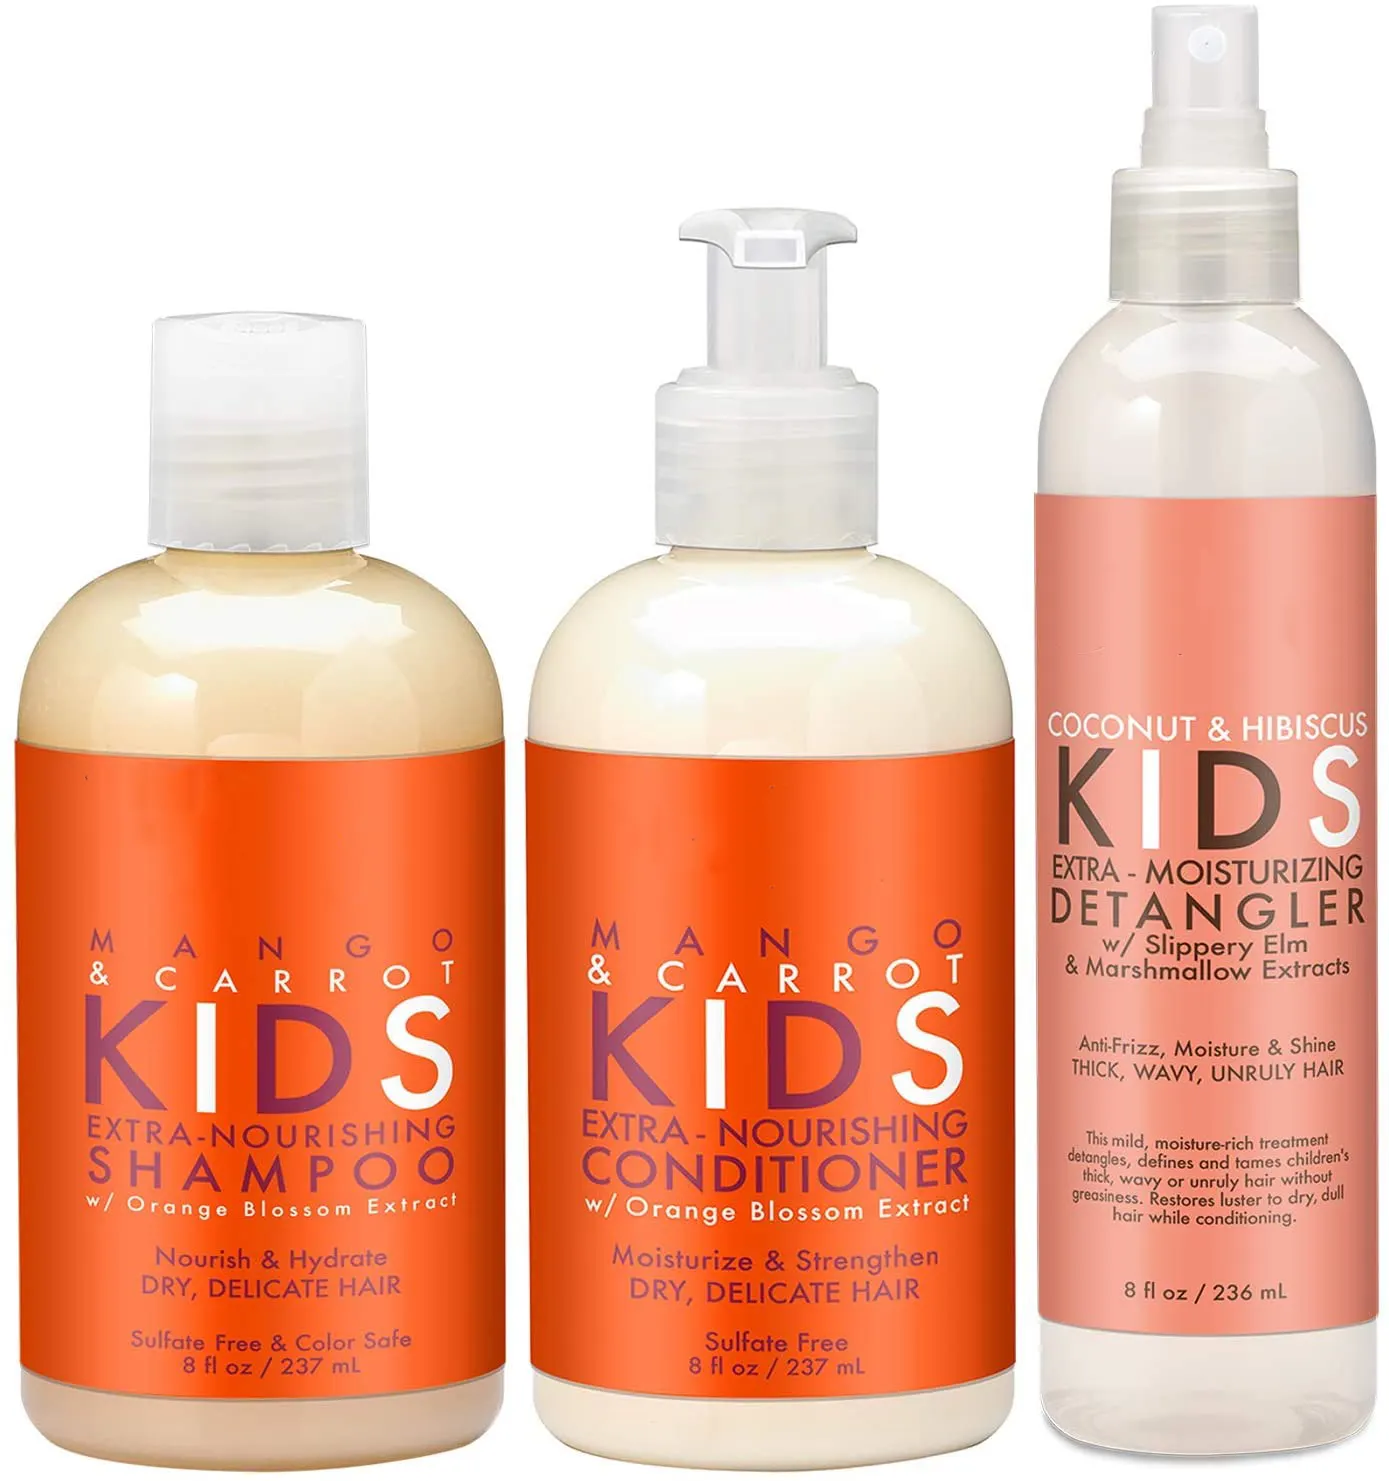 Shea Moist ure Color ation Lieferanten Bio Kräuter sulfat frei in Bulk Kids Shampoo